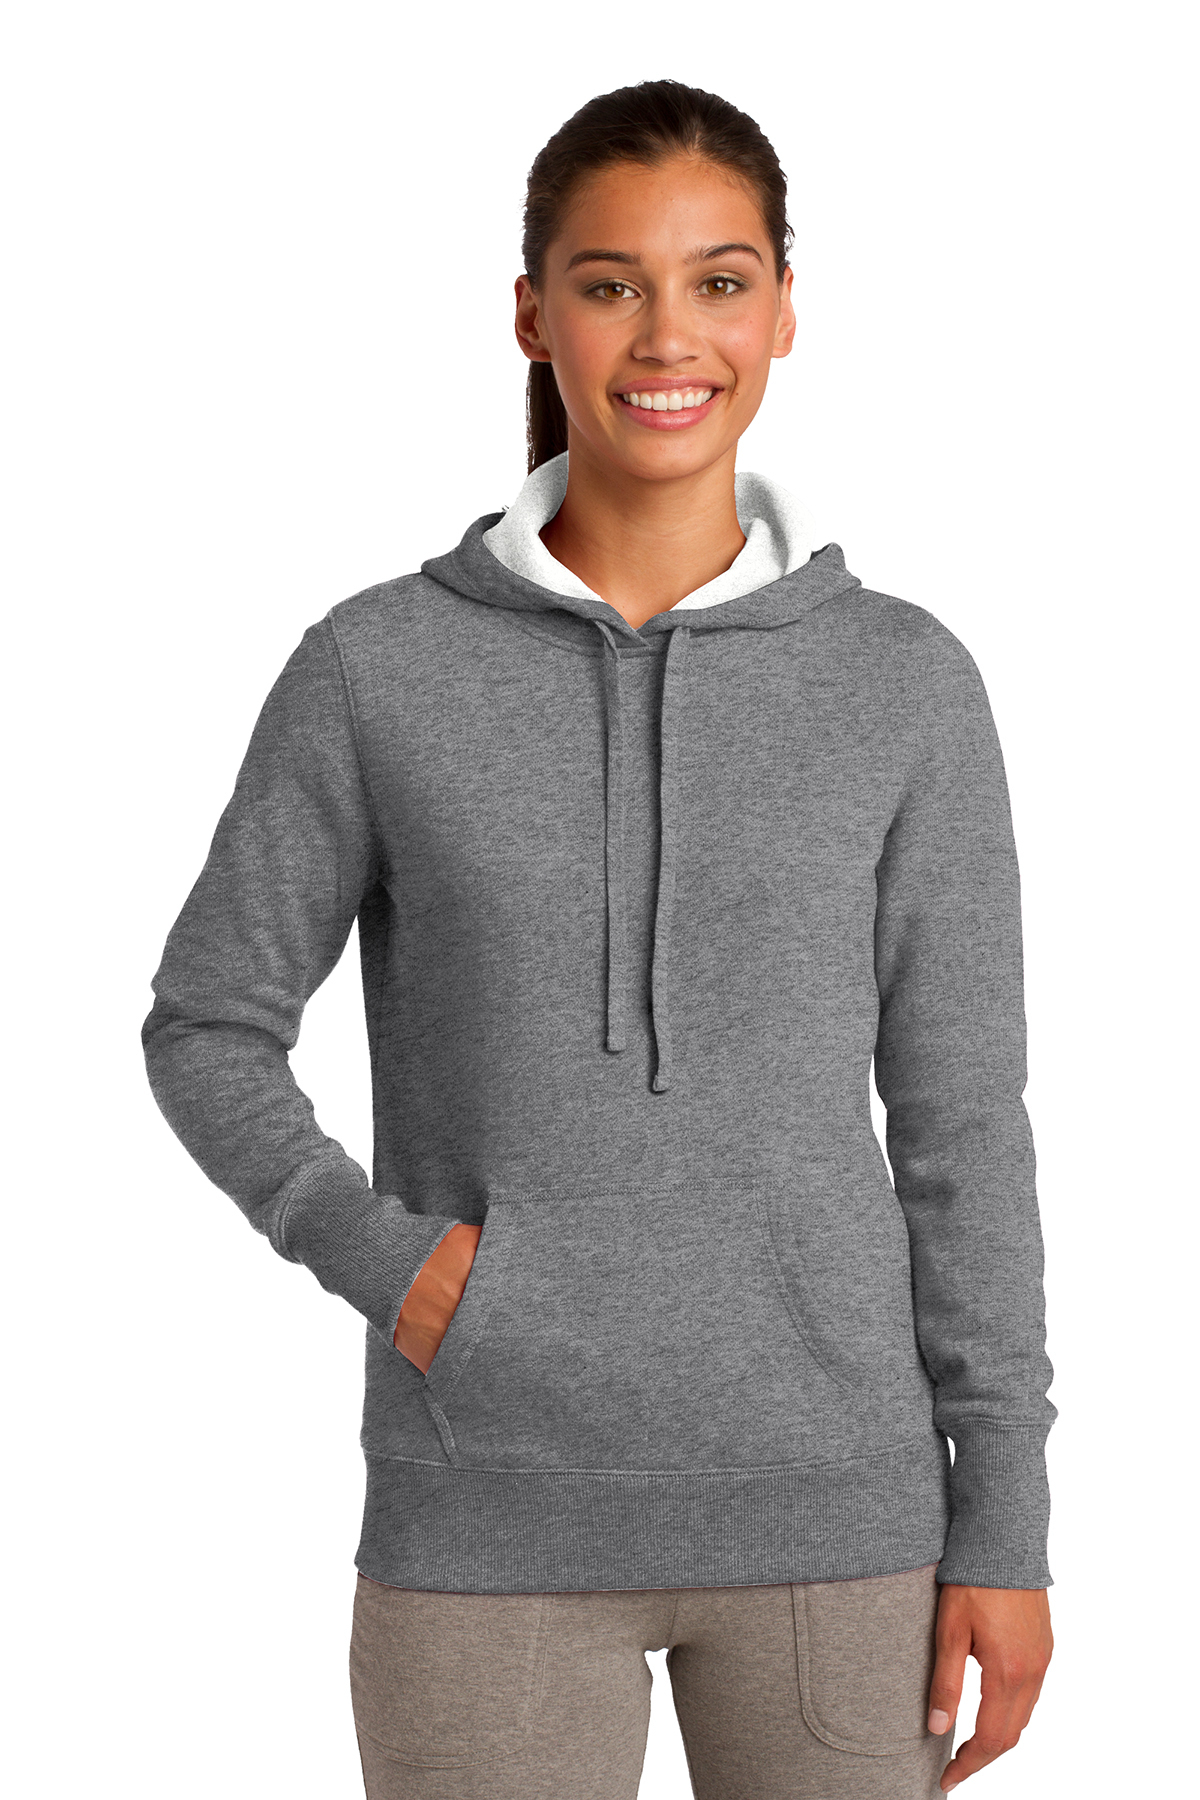 Sport-Tek Ladies Pullover Hooded Sweatshirt. LST254 - Sweatshirts